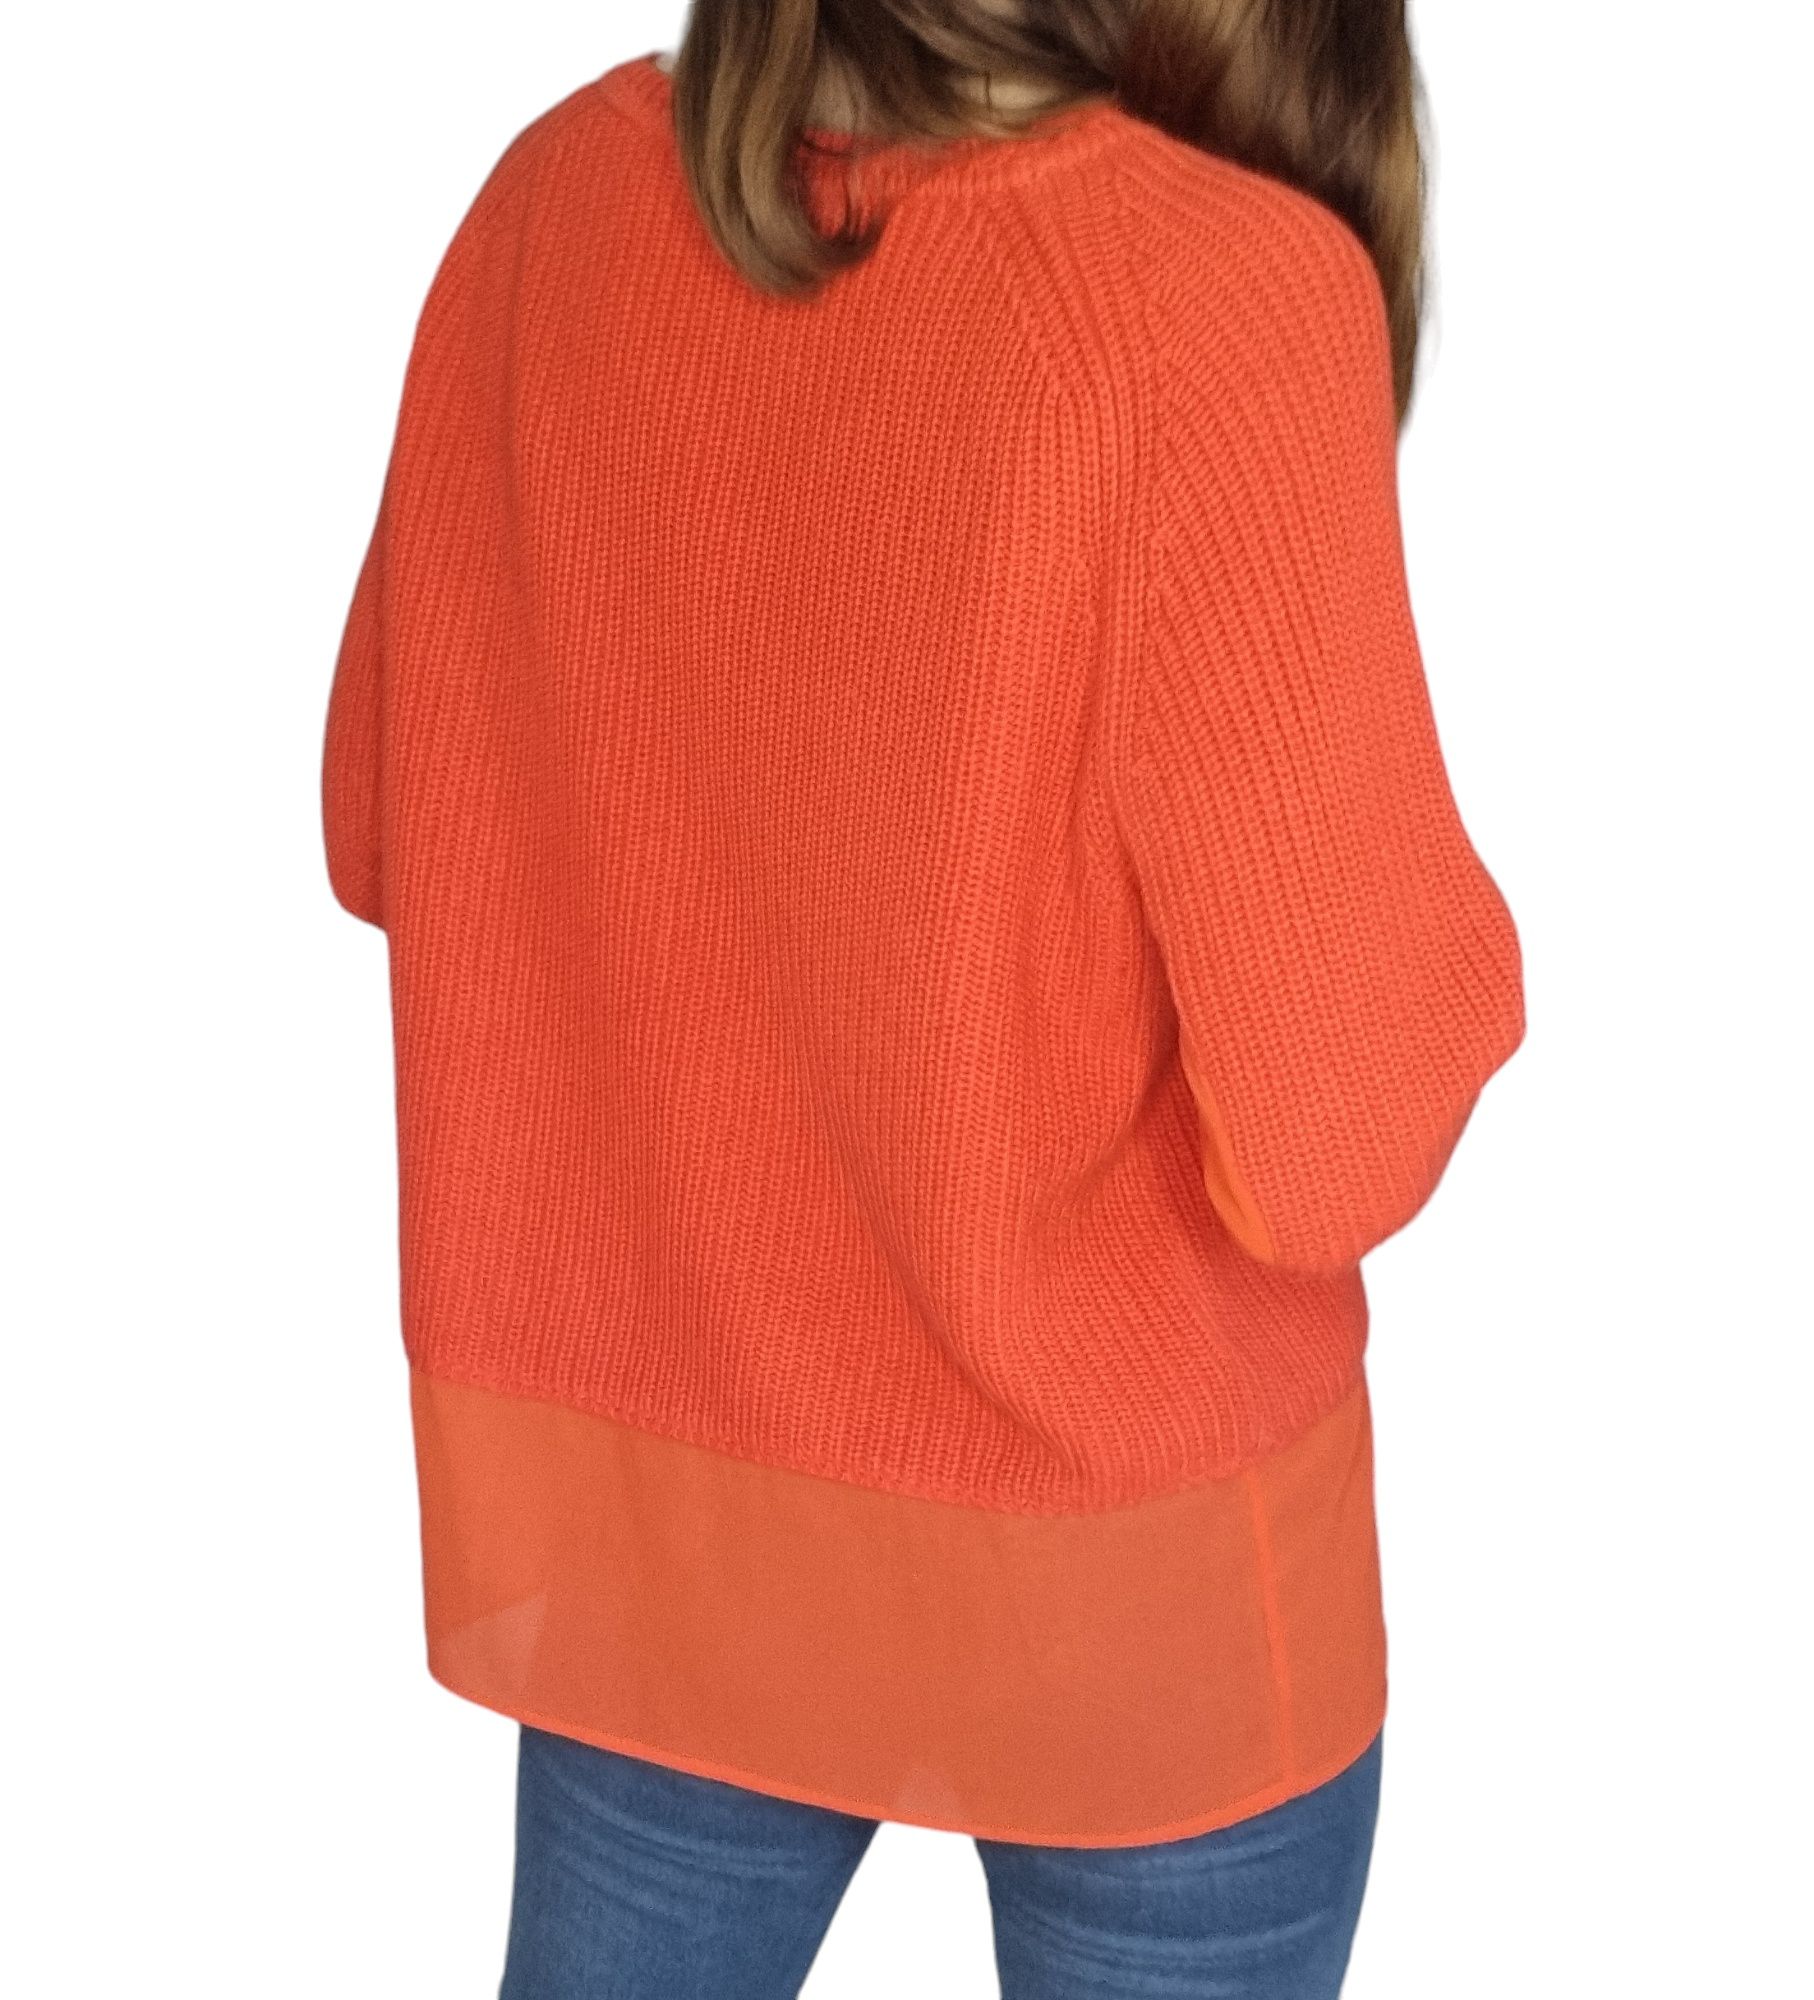 Sweterek alba moda rozmiar L 40